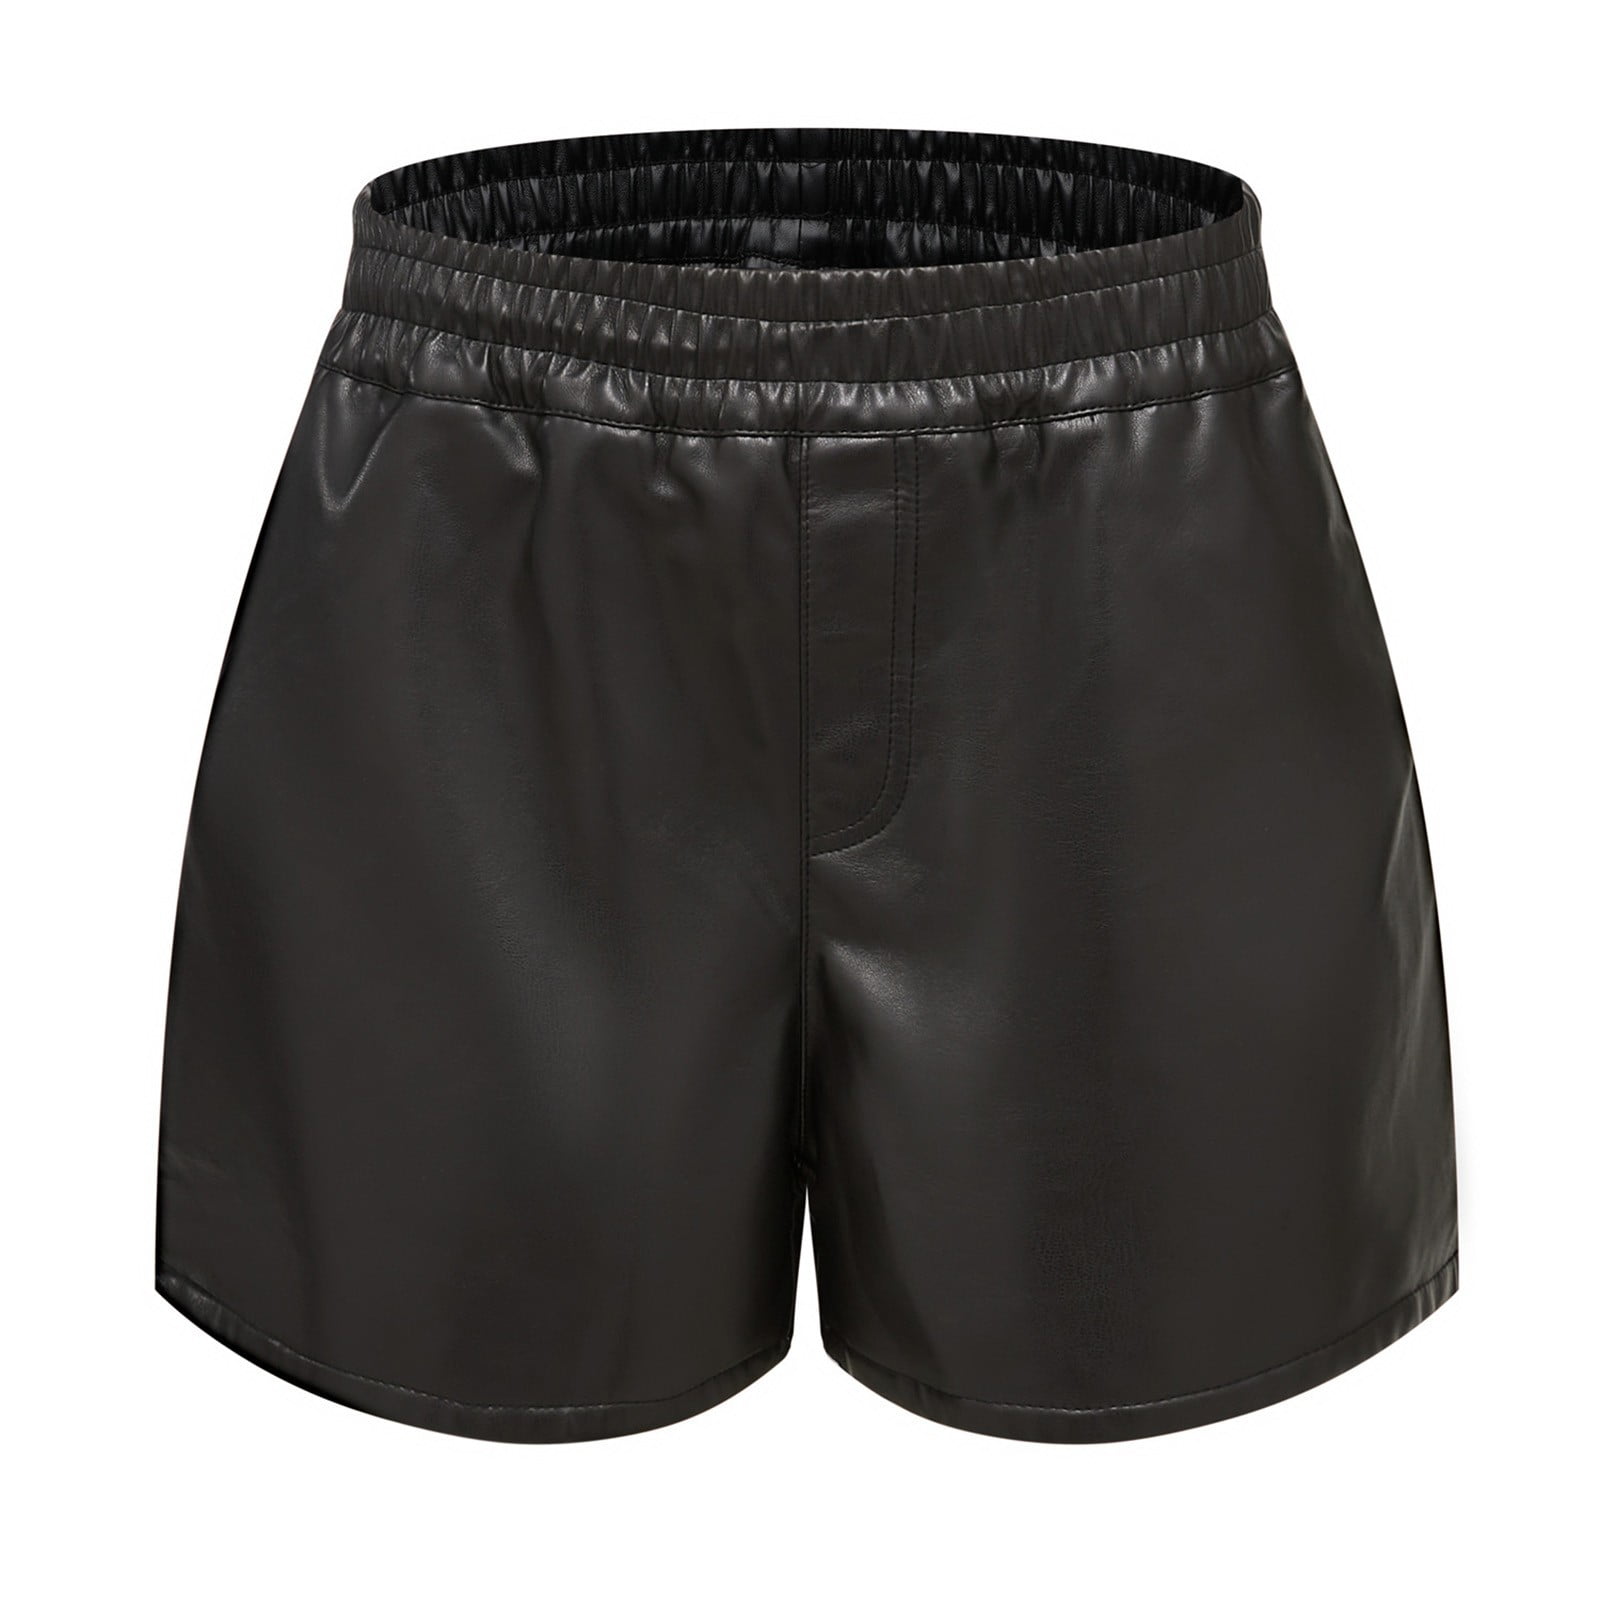 HSMQHJWE Hey Nuts Biker Shorts For Women Women'S Casual Shorts